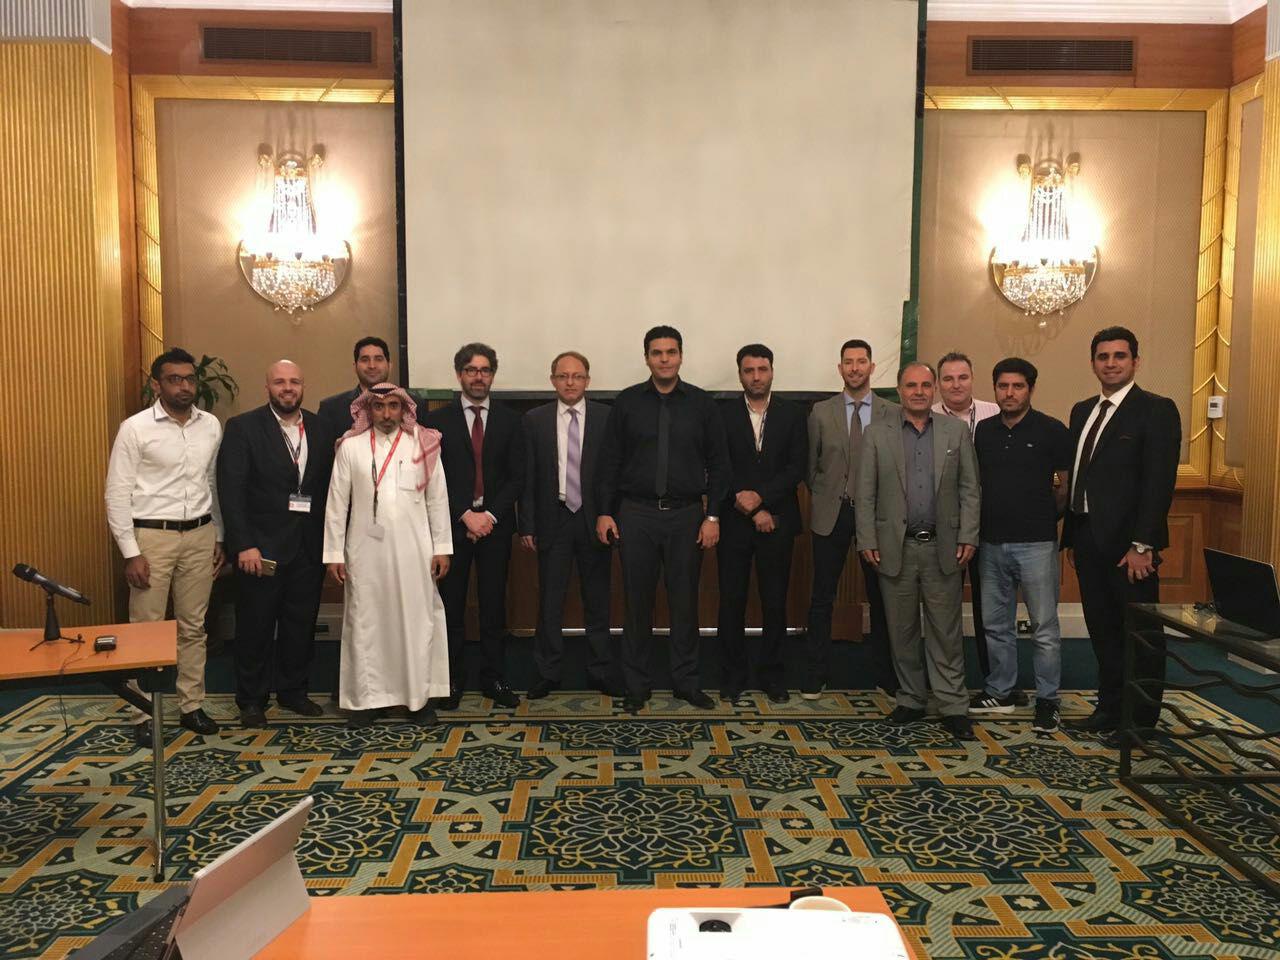 حضور شرکت تکسا در سمینار 2 روزه شرکت سالوانینی ایتالیا در امارات متحده عربی